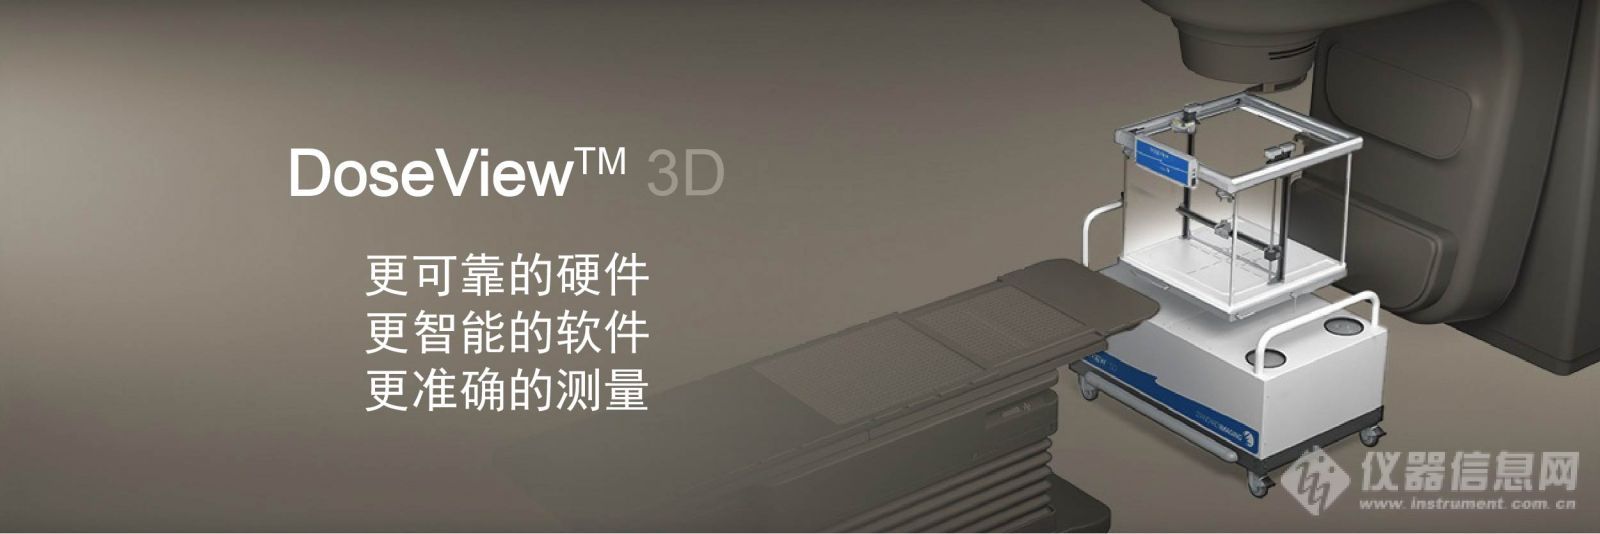 1三维扫描水箱系统DoseView 3D.jpg